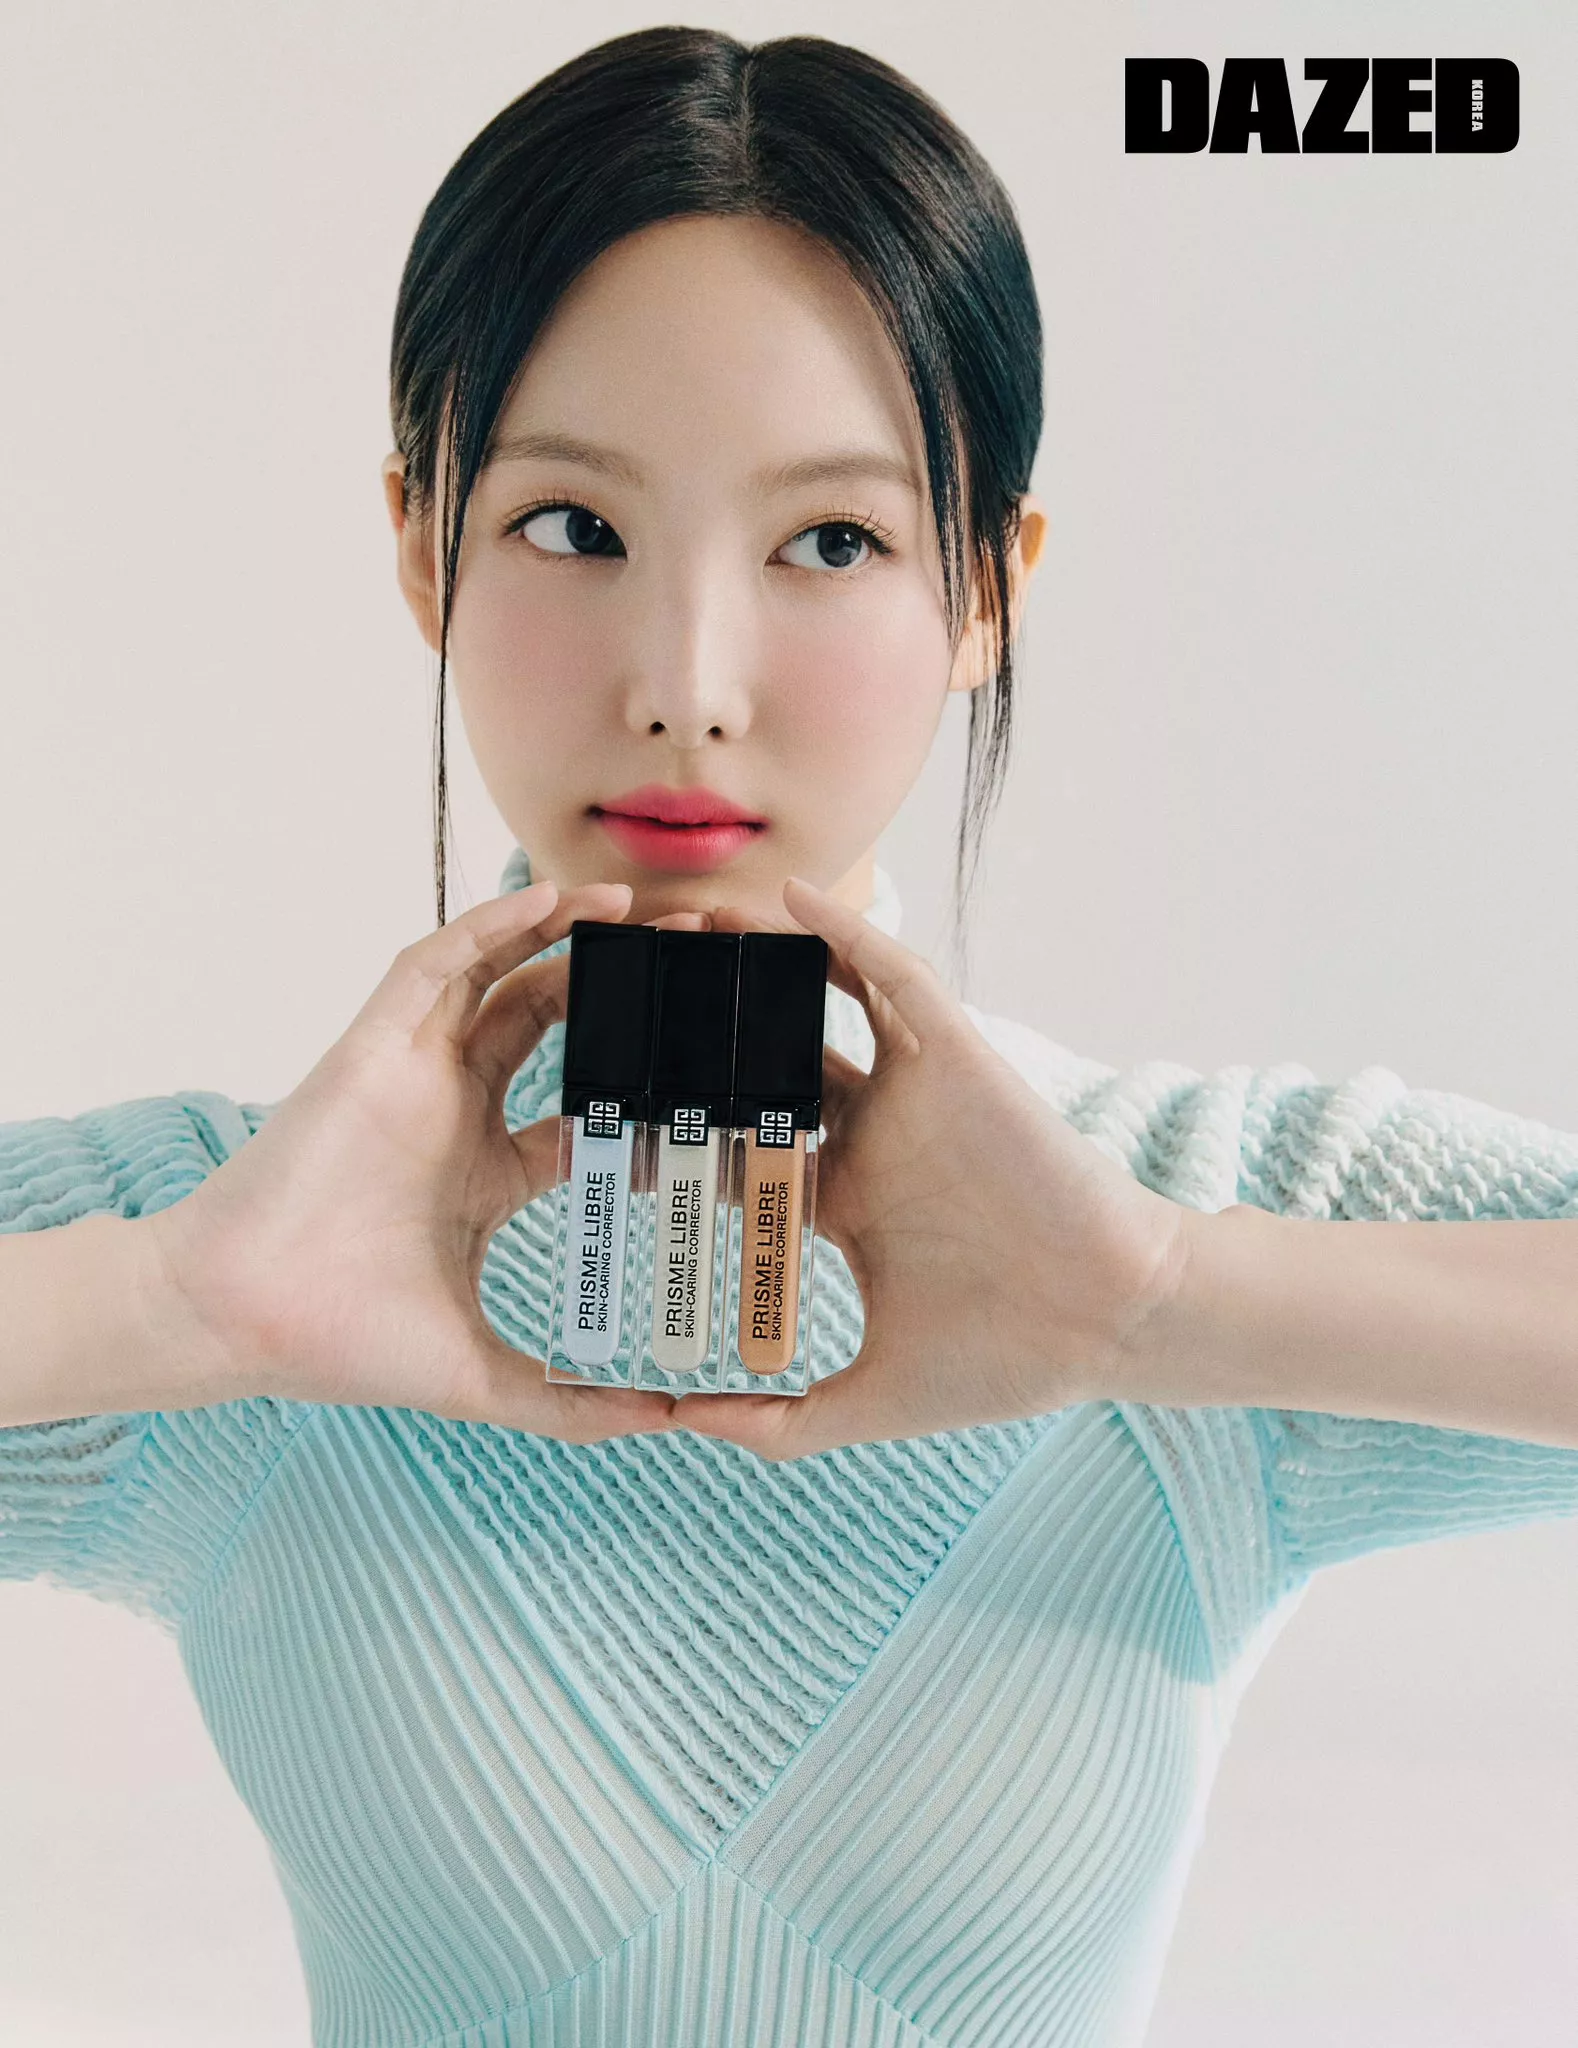 Наён из TWICE стала новой музой для Givenchy Beauty